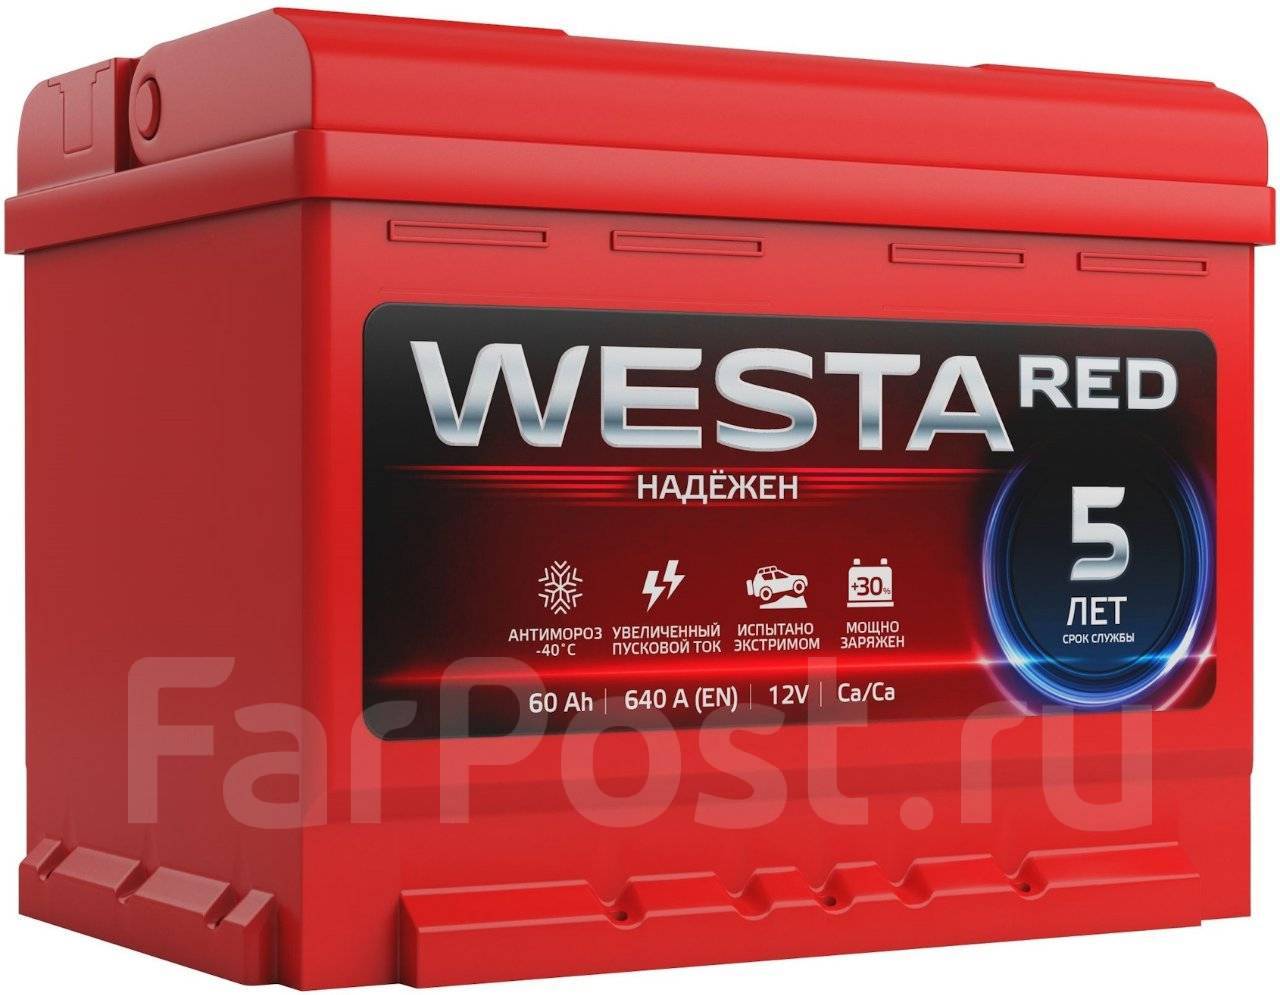 Зарядить аккумулятор 60ач. Аккумулятор Westa Red 60 Ач 640 а. Аккумулятор Westa Red 60 Ач 600. Аккумулятор Westa Red 100. АКБ Westa - 60 Red /640а/ EFB.